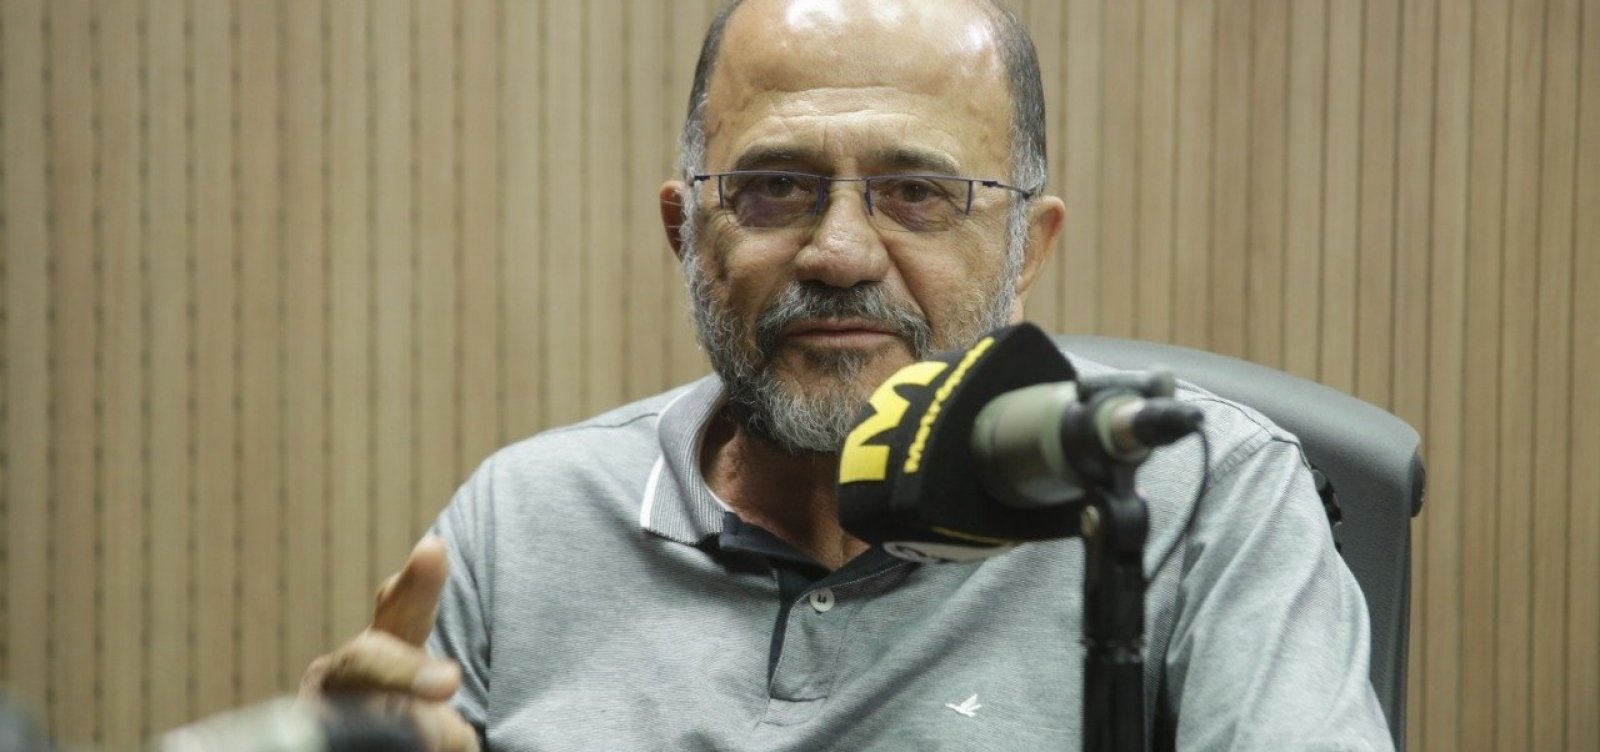 João Almeida justifica saída da política:  'Eleições foram ficando cada vez mais caras'